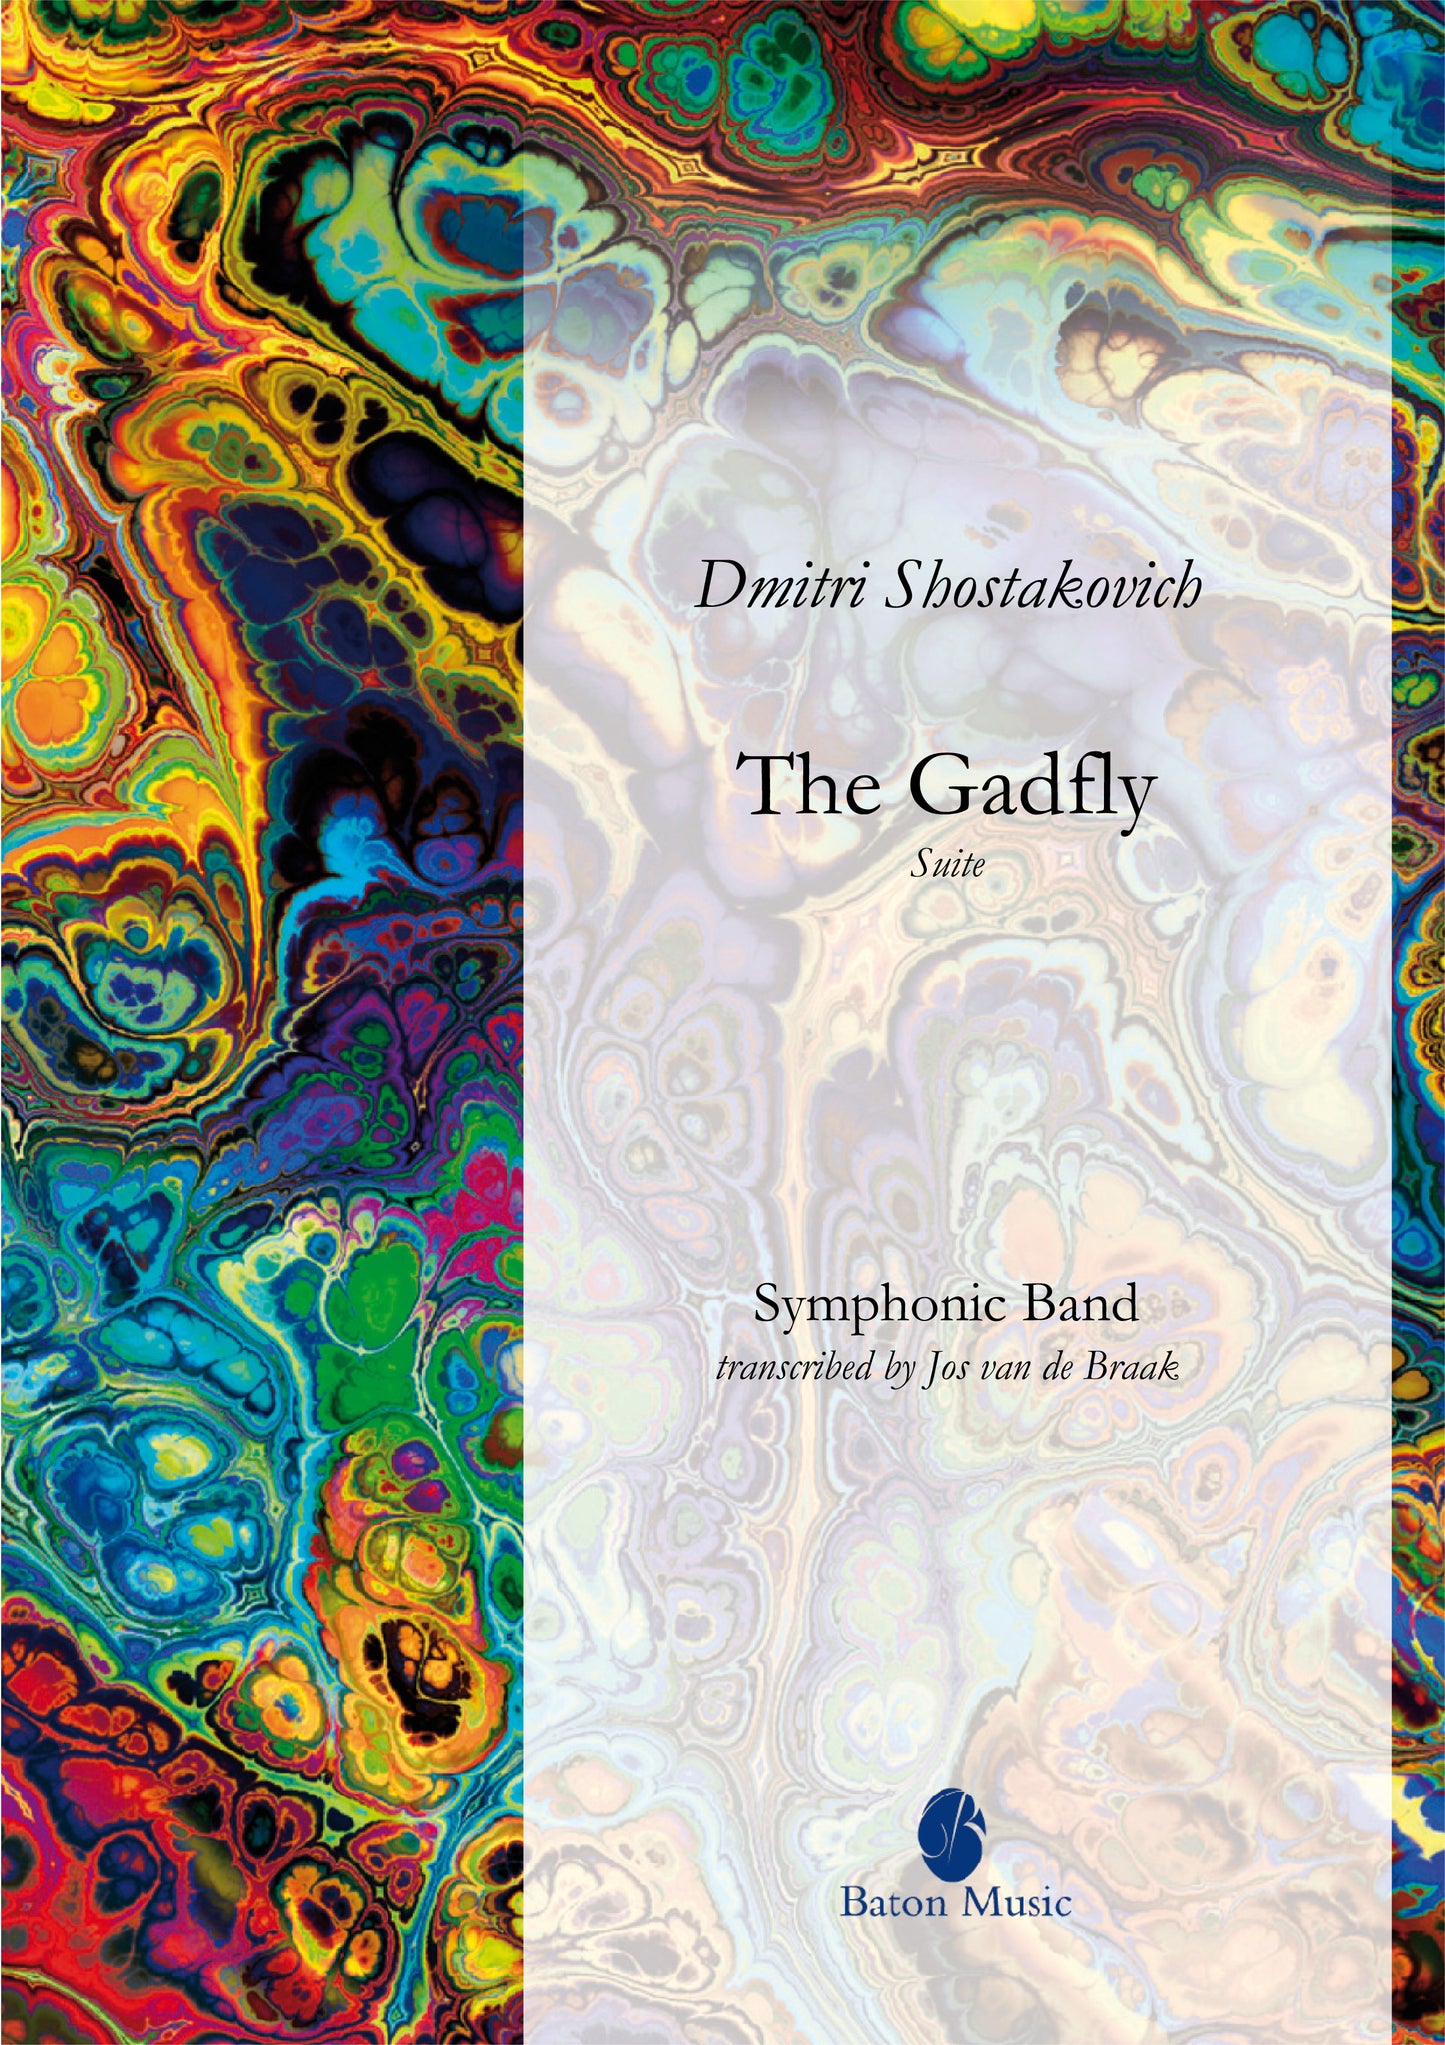 The Gadfly Suite - Dmitri Shostakovich